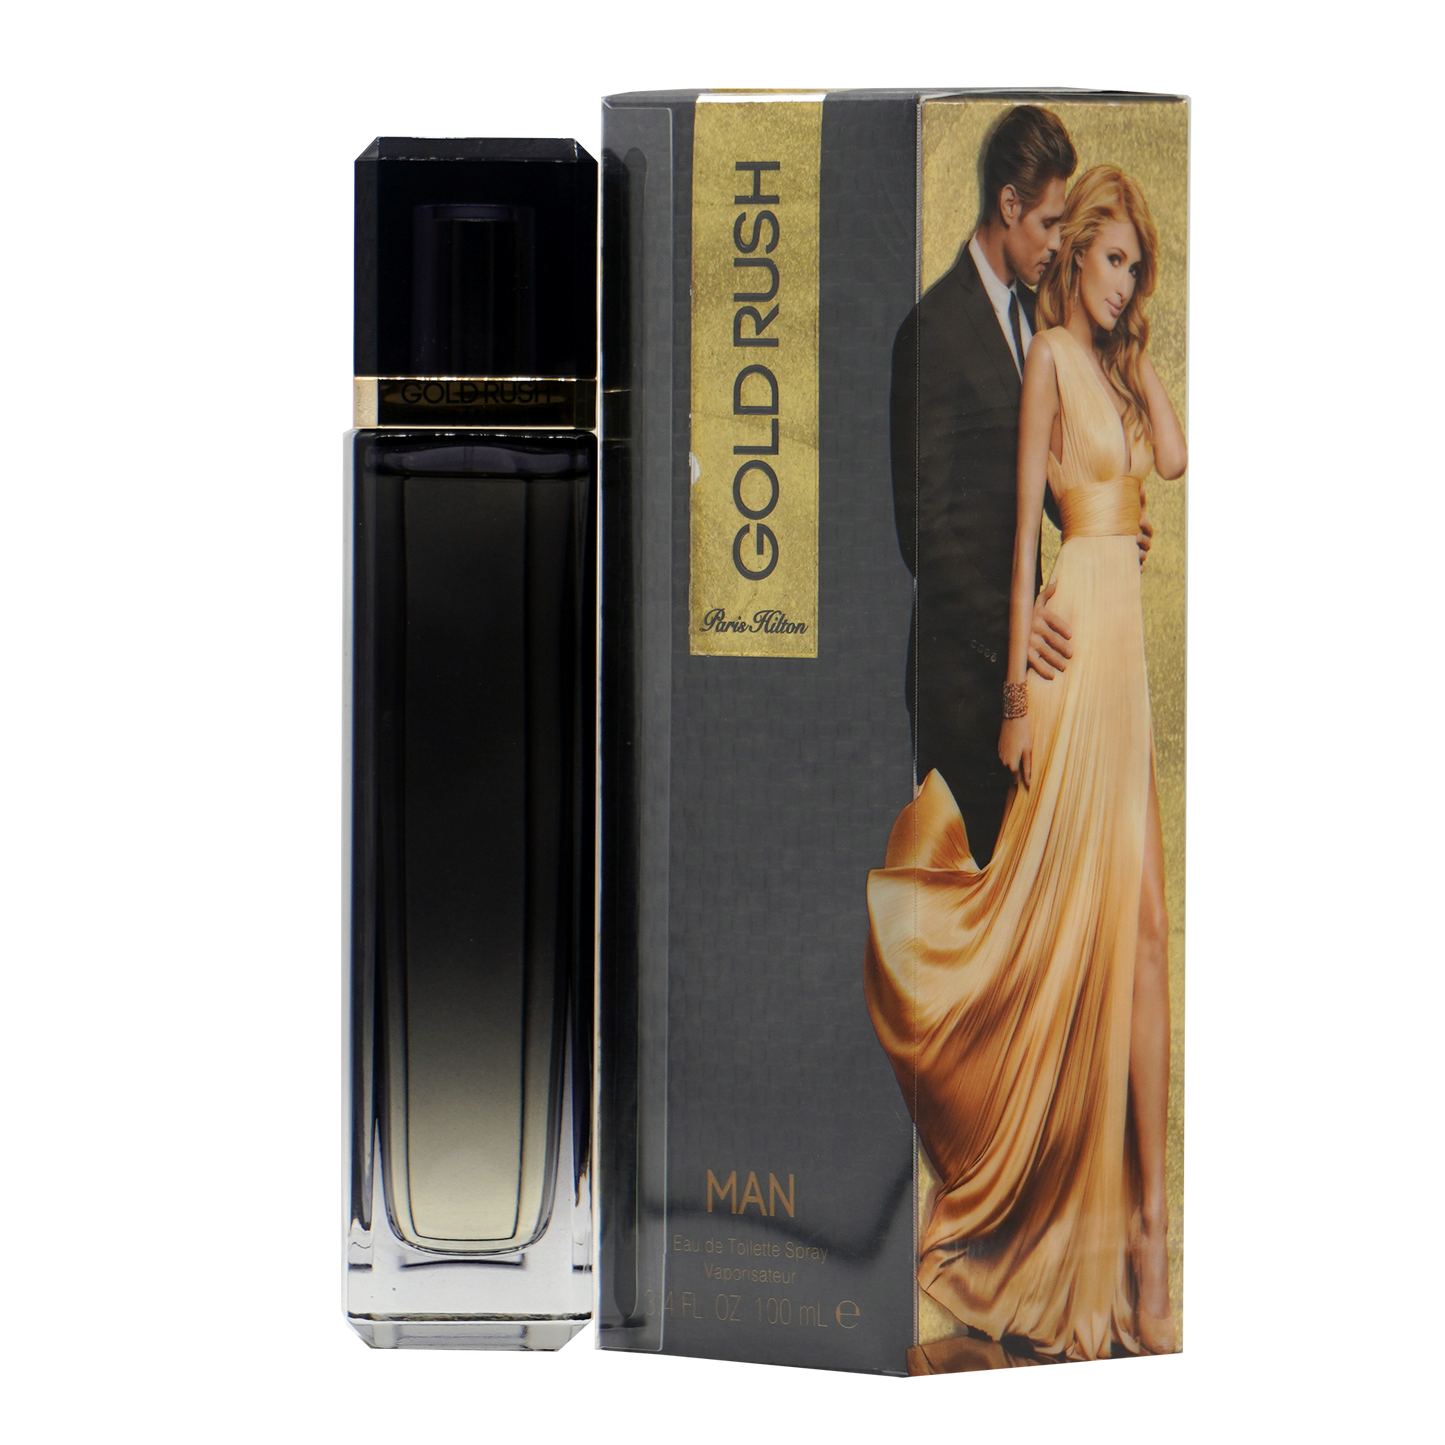 Gold Rush Man - Paris Hilton - 3.4 oz - Eau de Toilette - Fragrance - 608940566947 - Fragrance